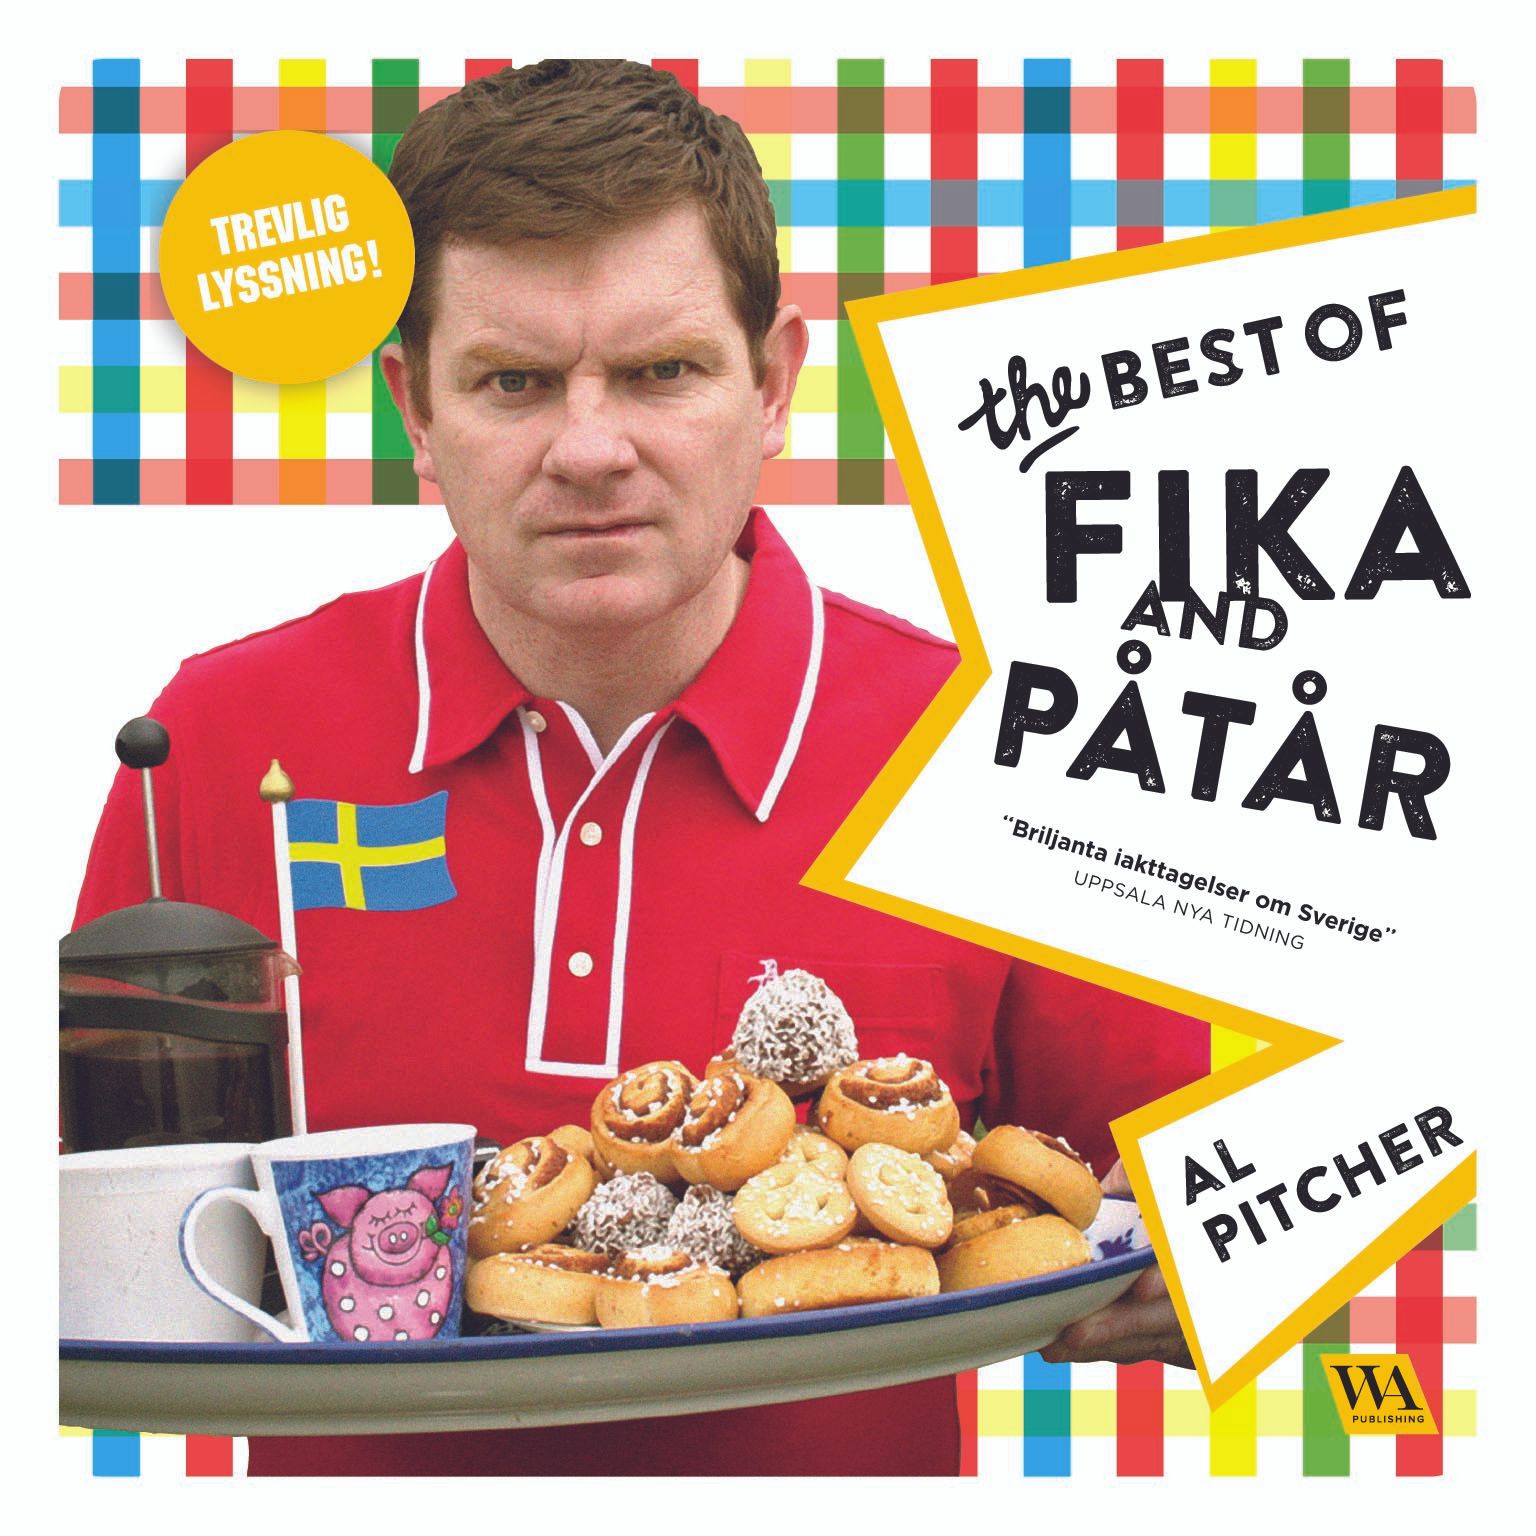 Al Pitcher - The Best of Fika and Påtår, audiobook by Al Pitcher